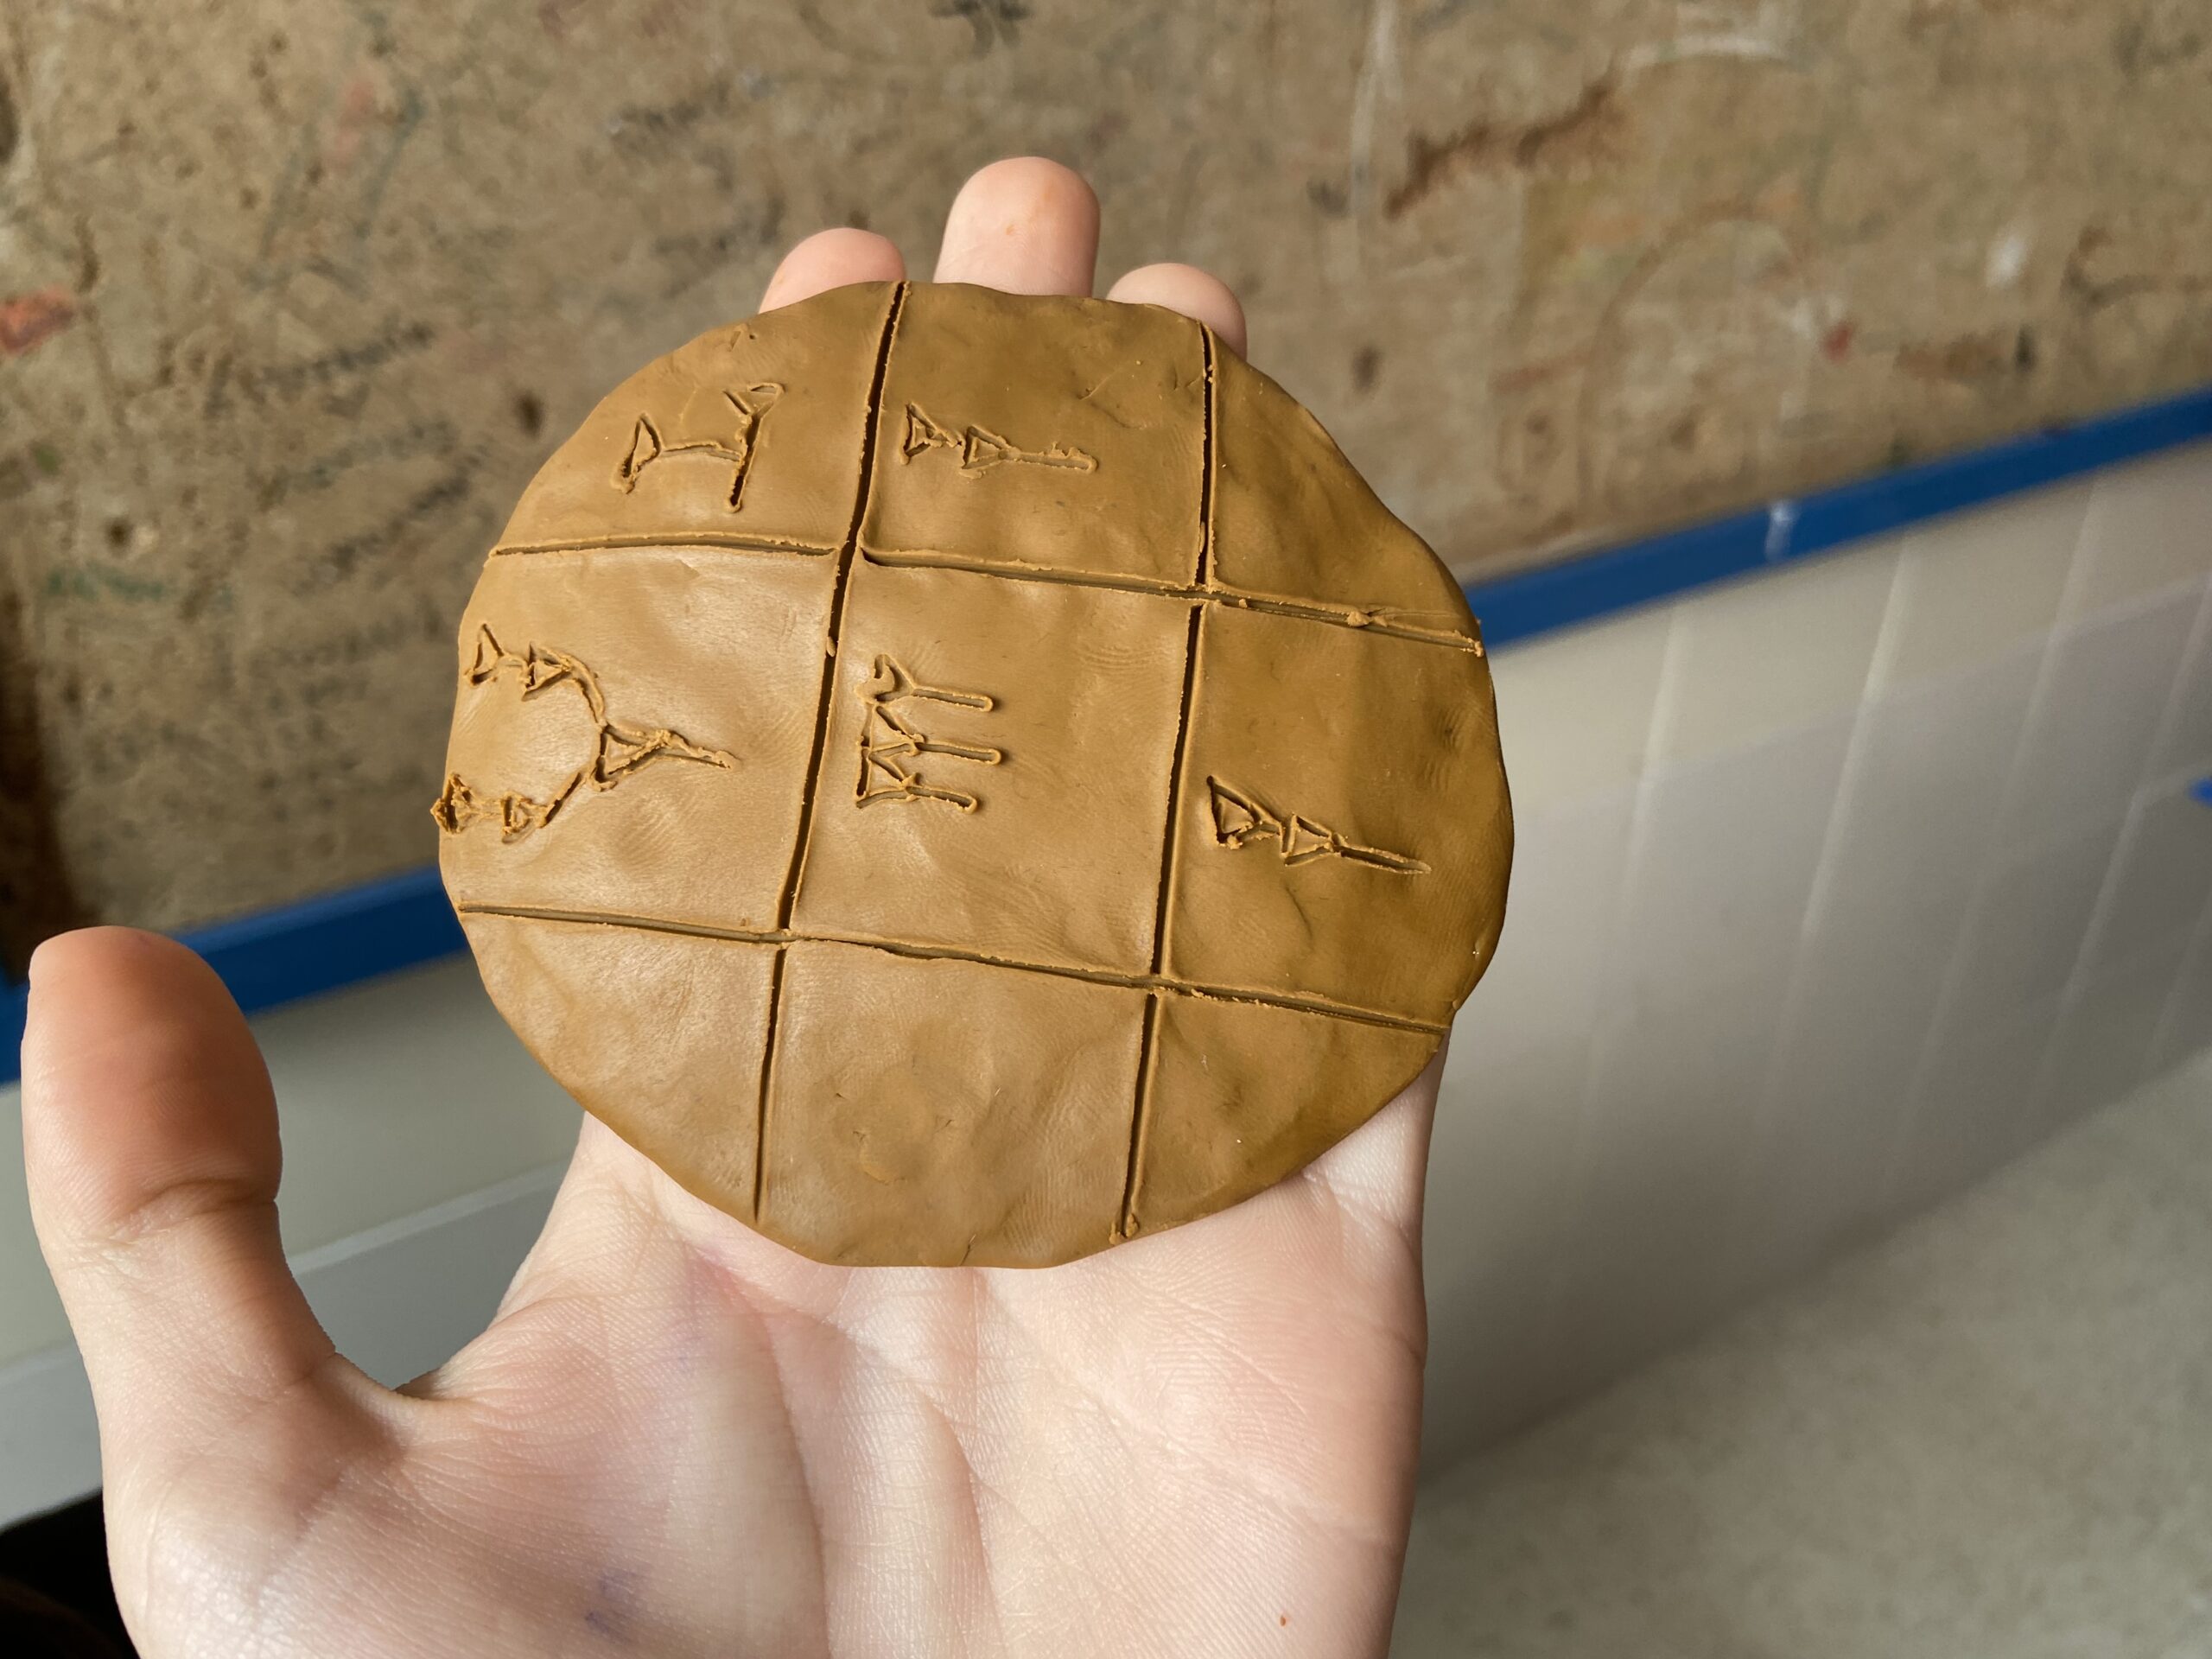 Una mano (la mía) sostiene una tablilla de escritura cuneiforme hecha en plastilina. De fondo, un corcho que ha conocido tiempos mejores.